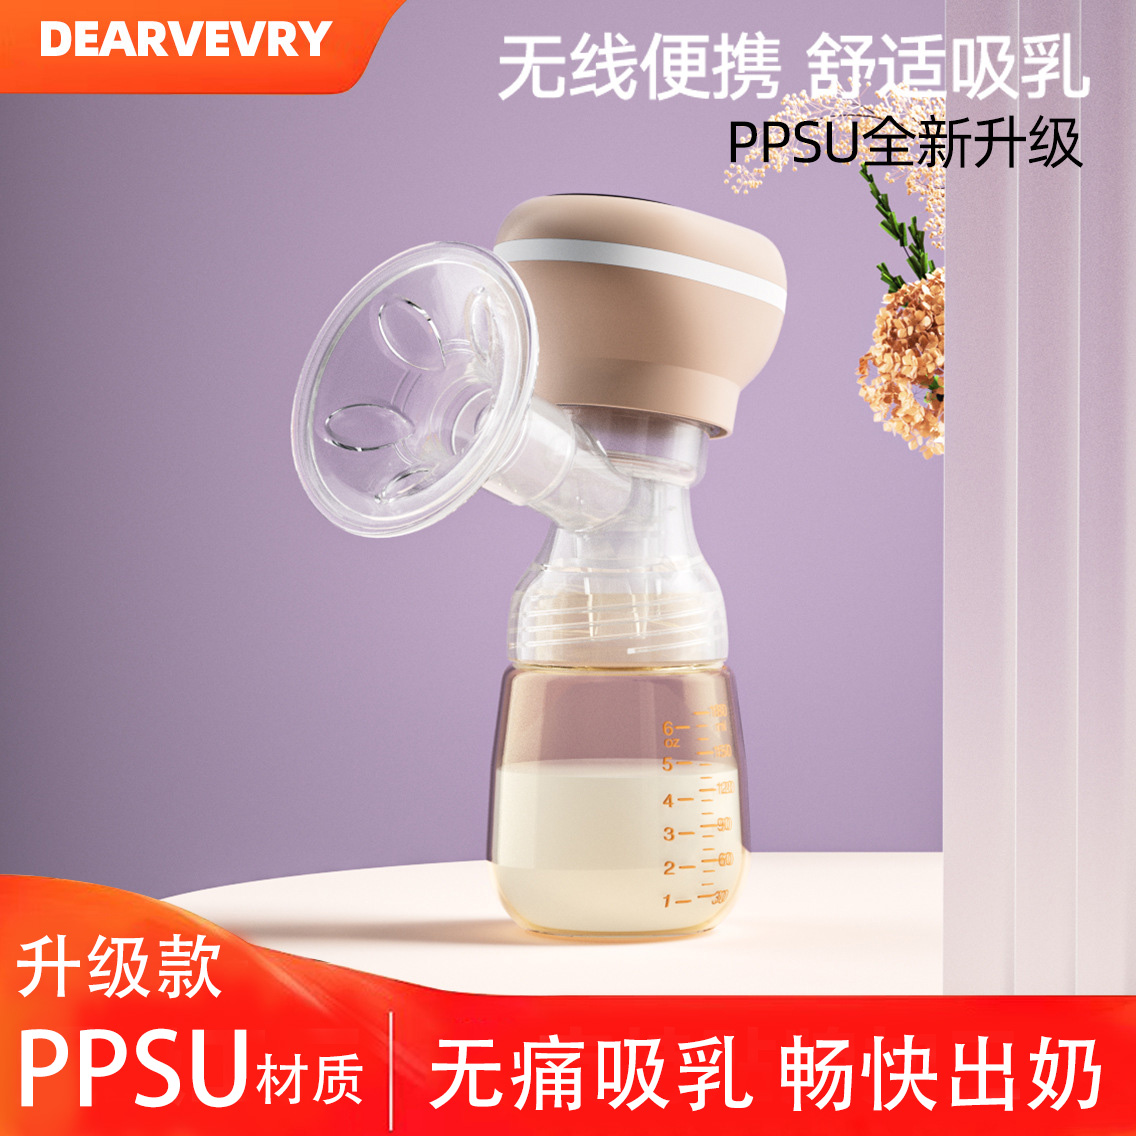 自动全自动开奶孕吸乳产妇电动吸奶器奶器静音一体式便携挤产后